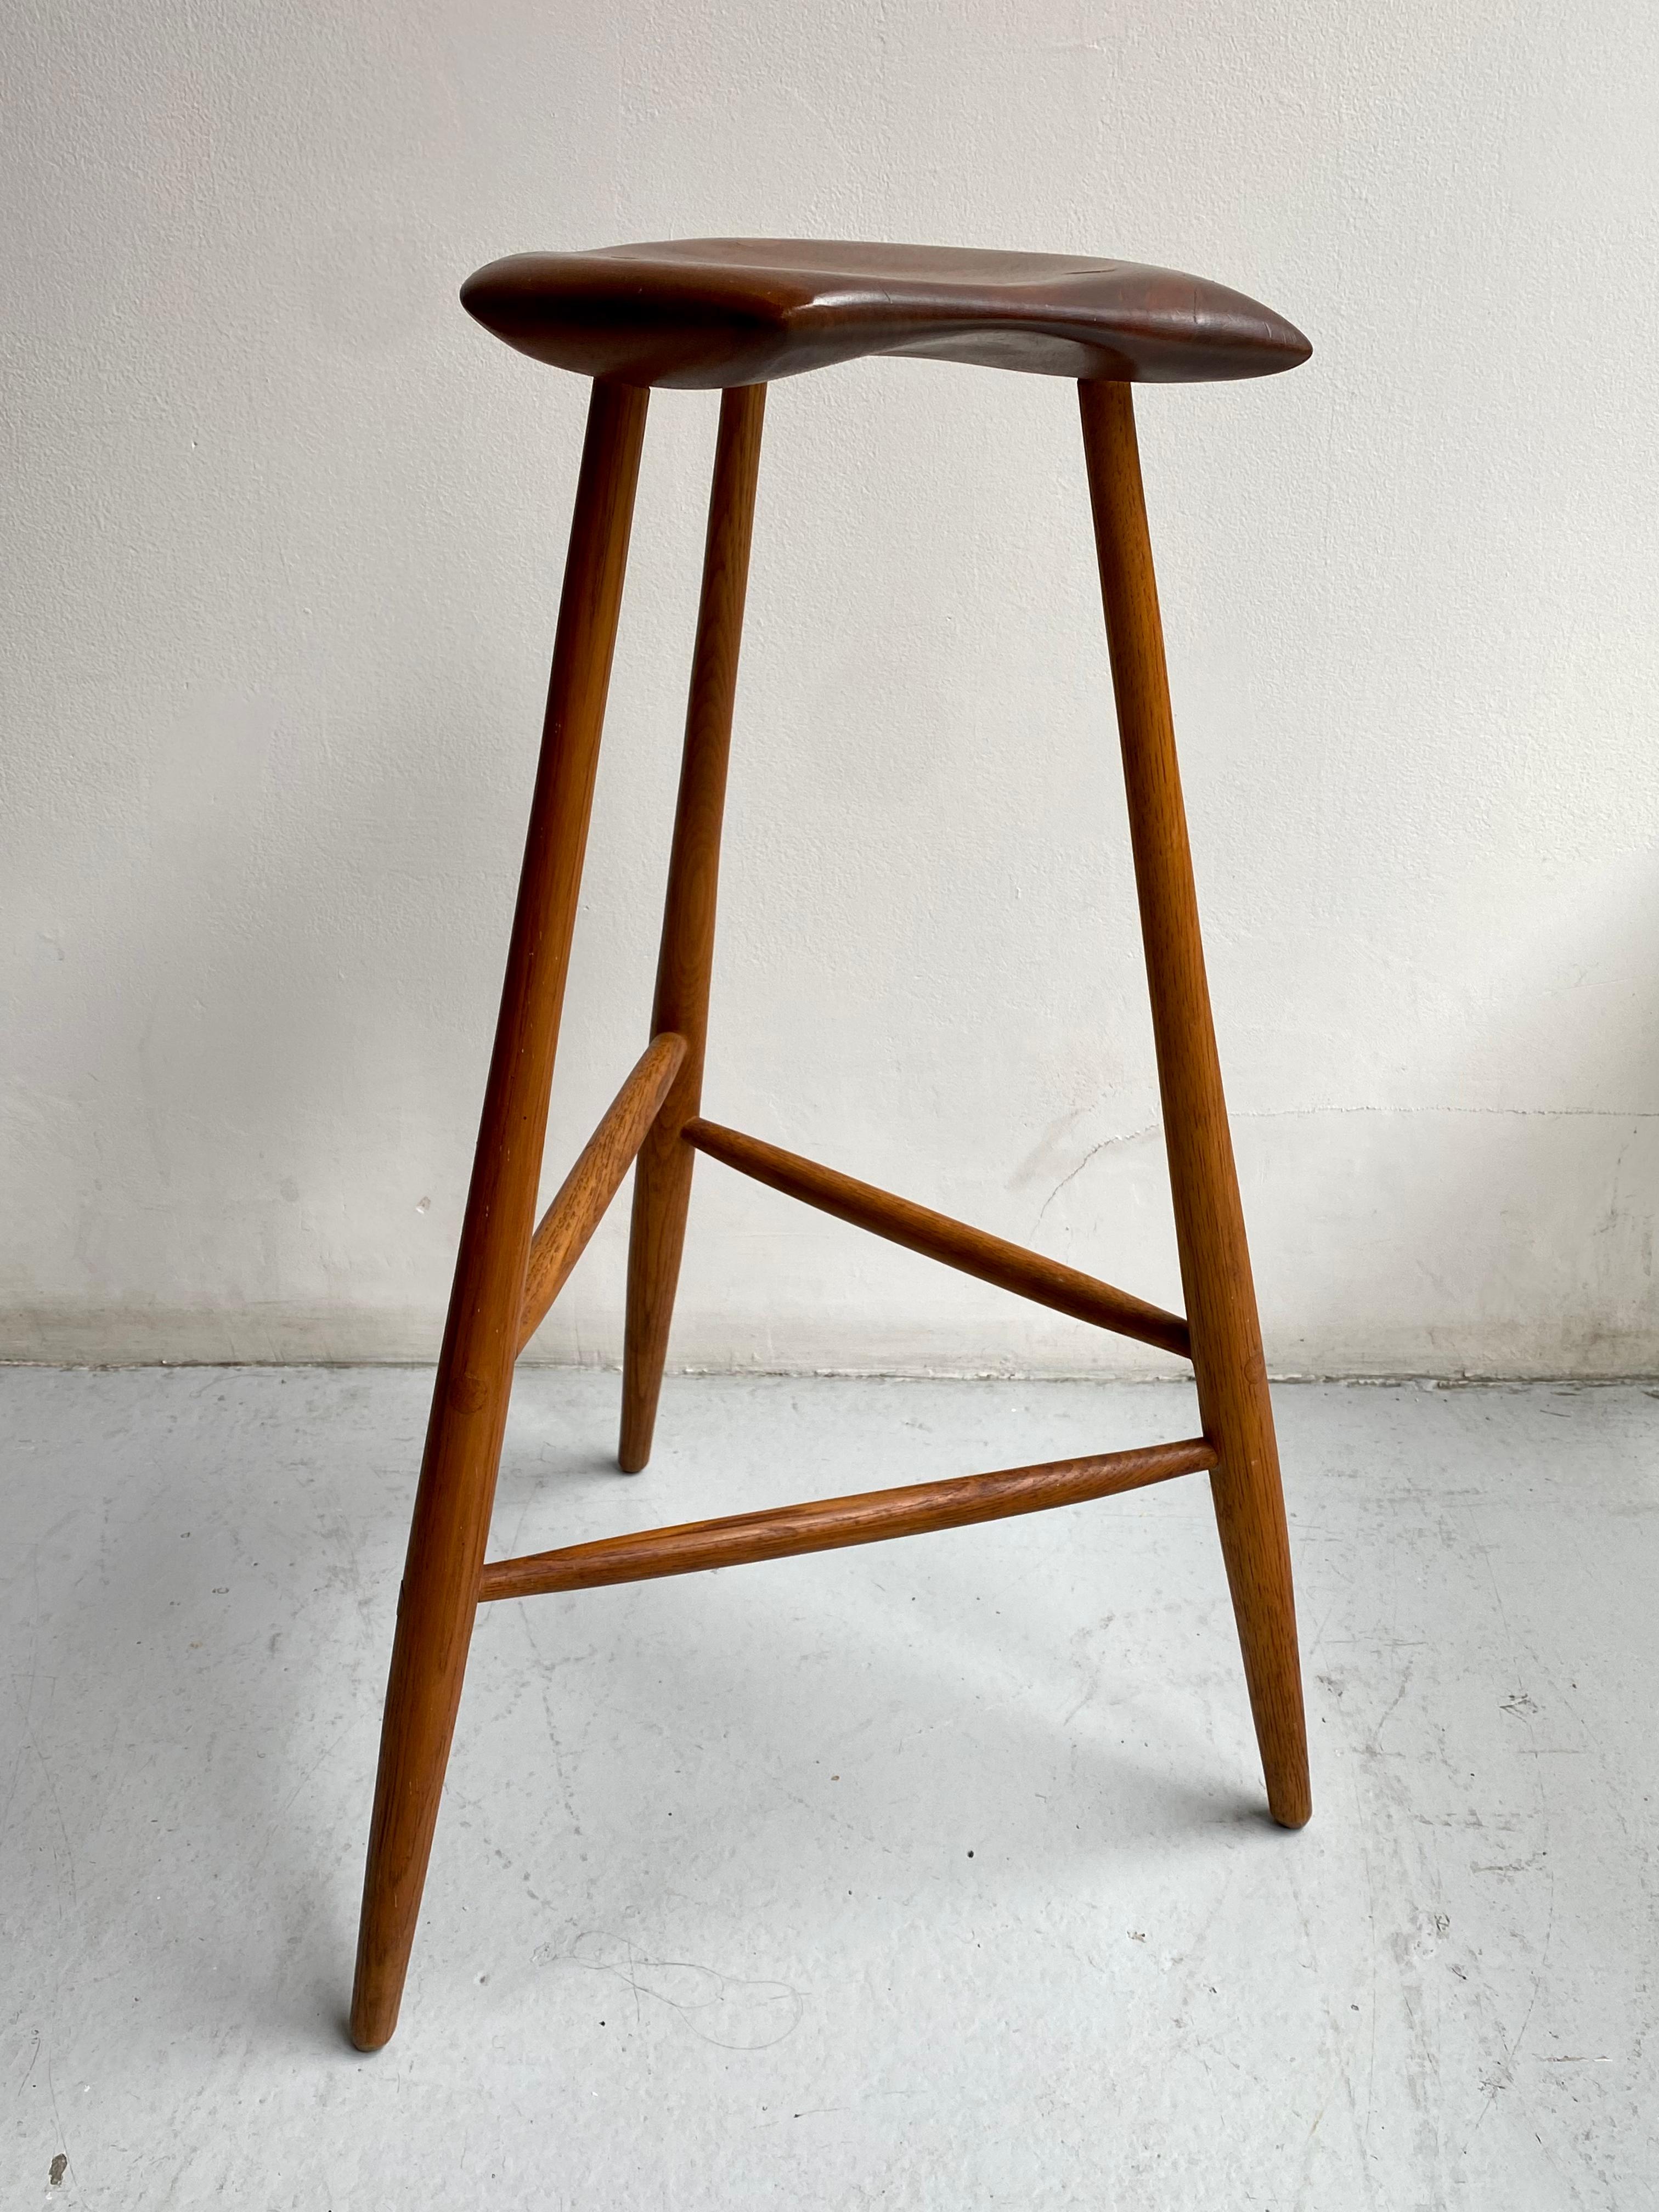 Der 1958 entworfene dreibeinige Hocker von Esherick ist eines seiner bekanntesten Stücke. Da die Form des Sitzes von der Maserung jedes einzelnen Nussbaumholzes abhängt, gleicht kein Exemplar dem anderen. Eingeschnitzte Signatur und Datum auf der